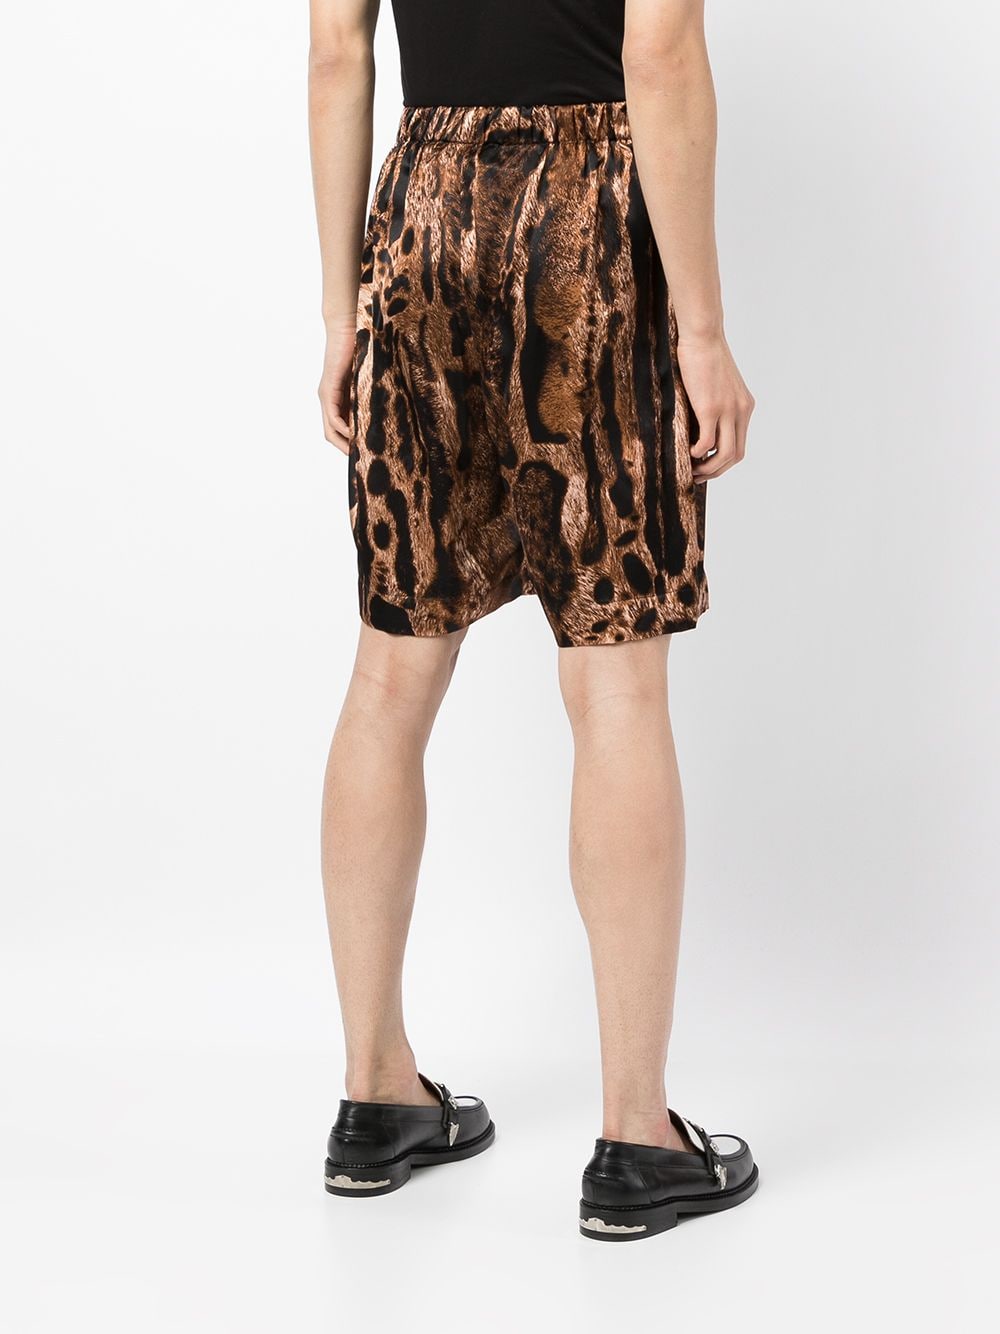 фото Edward crutchley шорты с леопардовым принтом